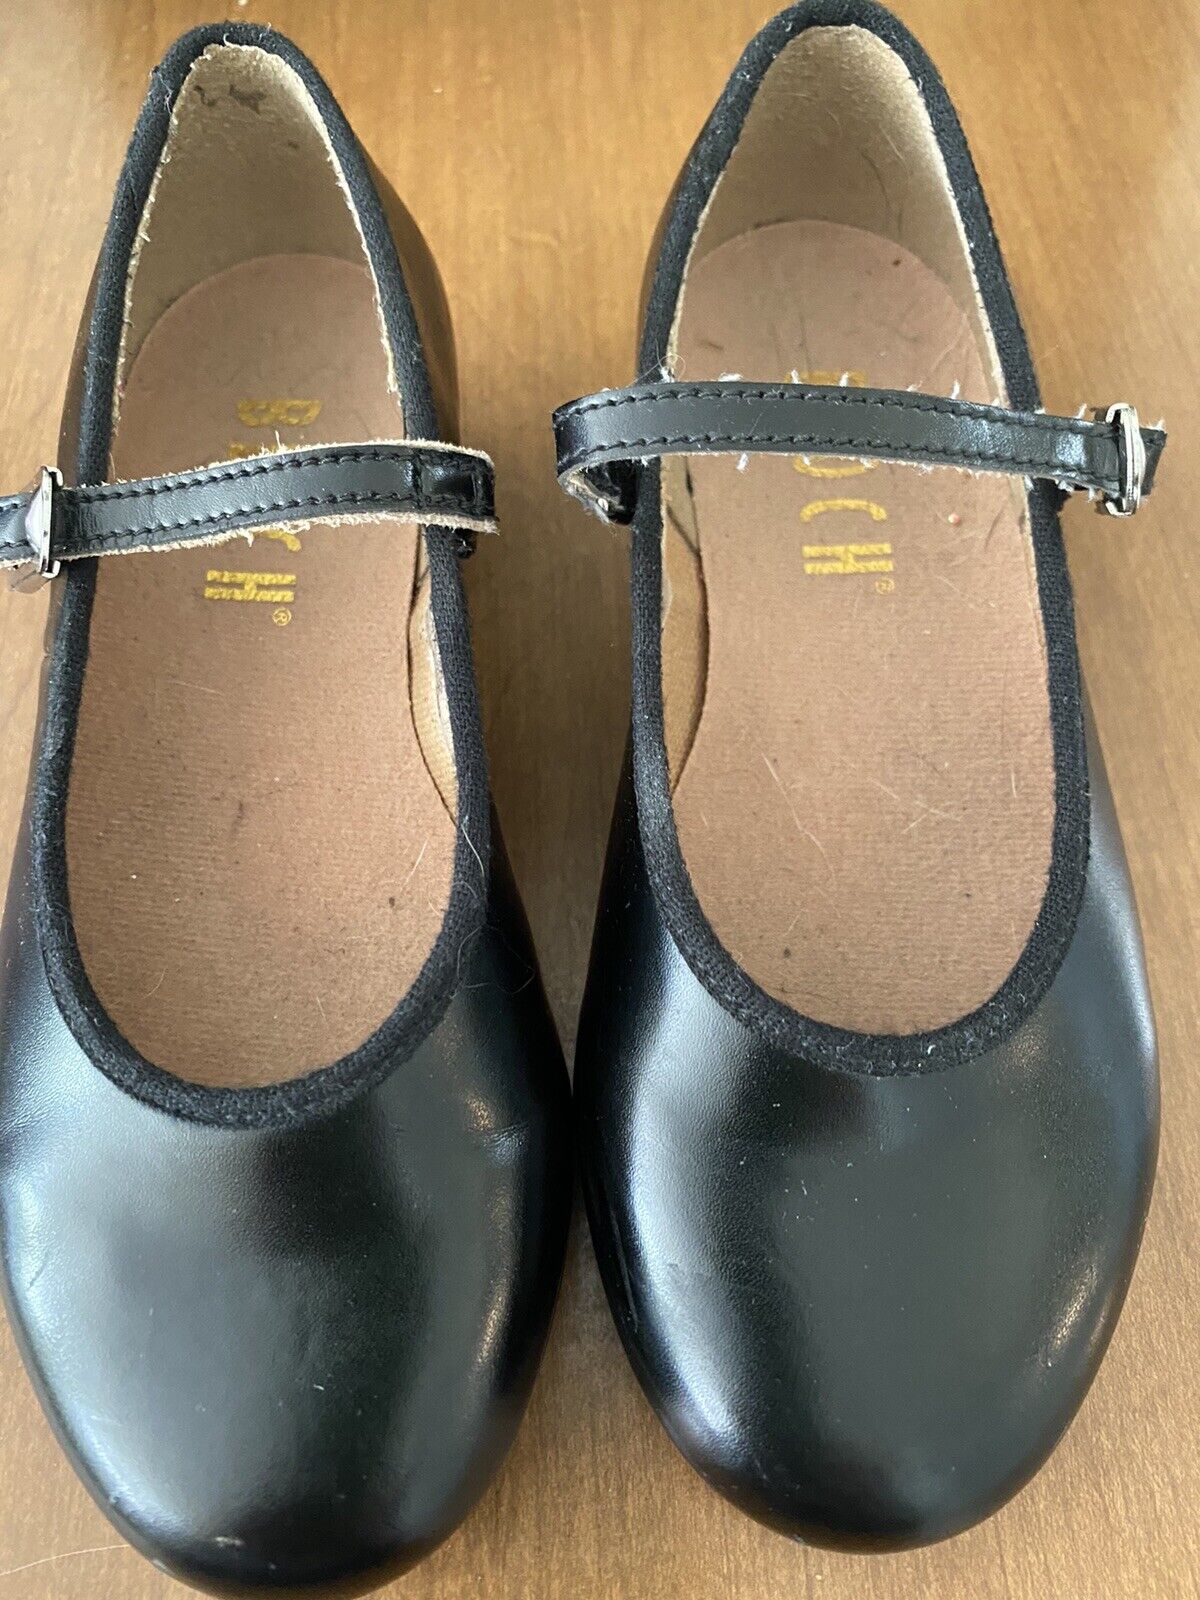 Bloch Tap Shoes Little Girl Size 11m Black Clean/ Good Condition Dance Shoes